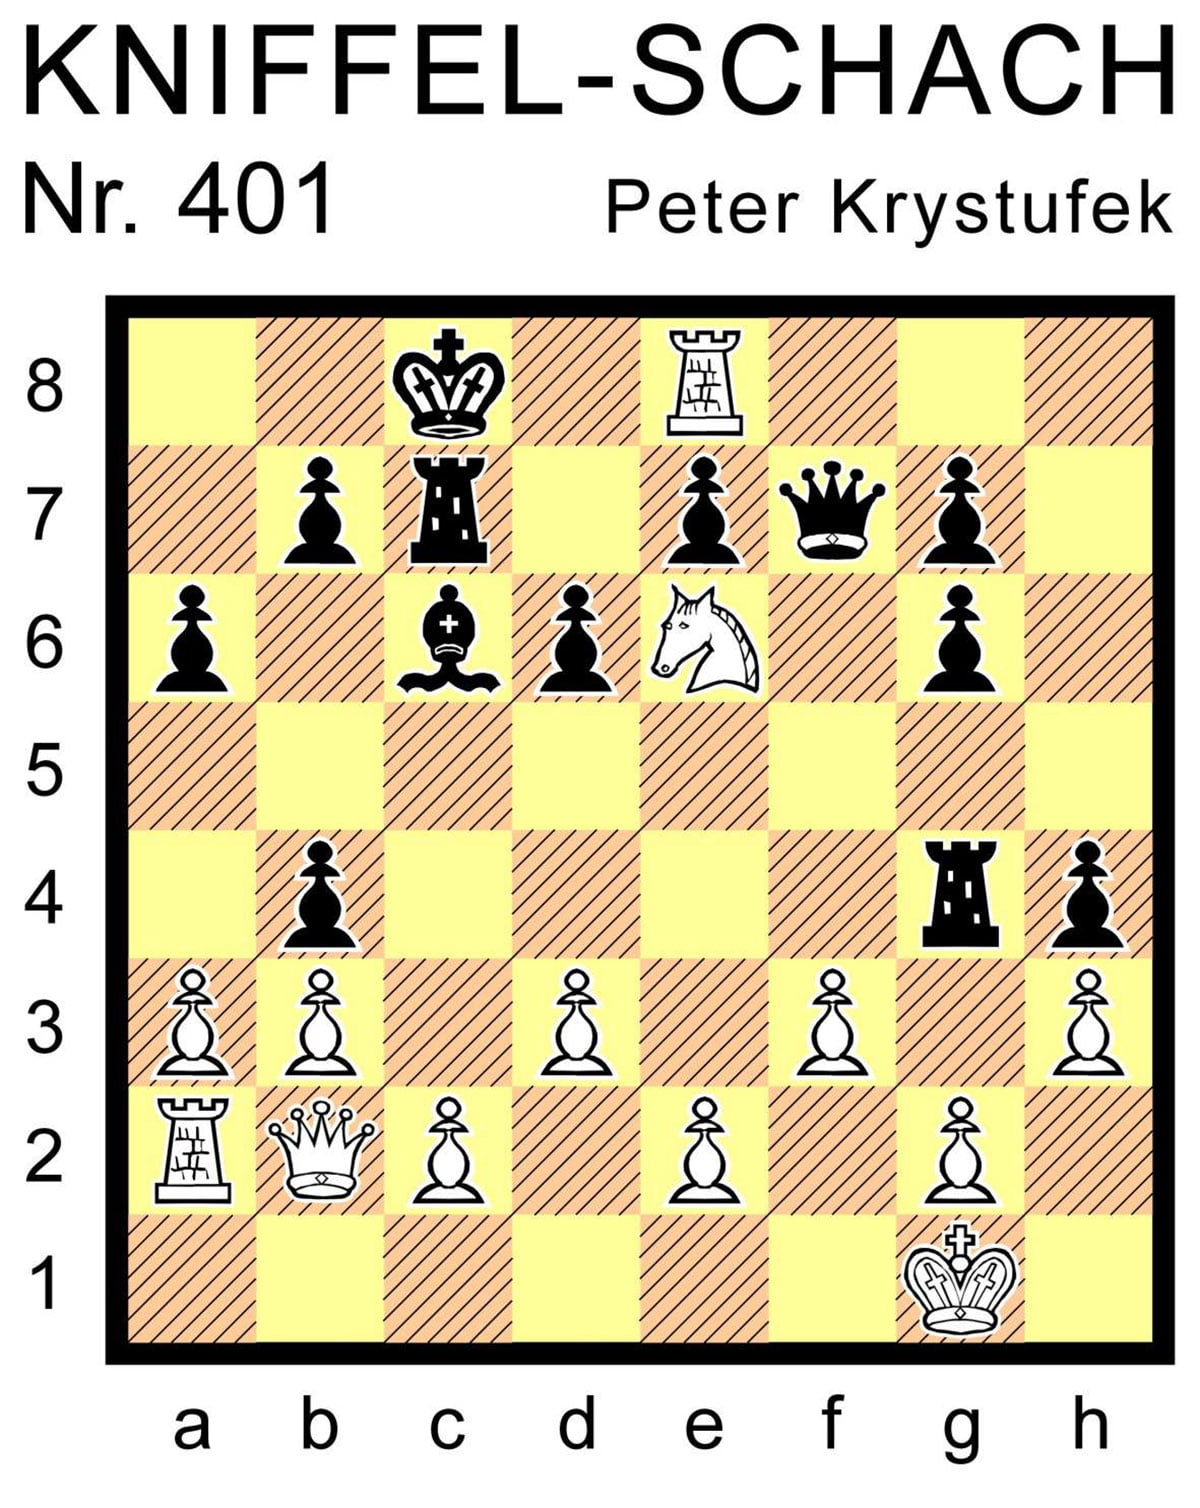 Kniffel-Schach Nr. 401